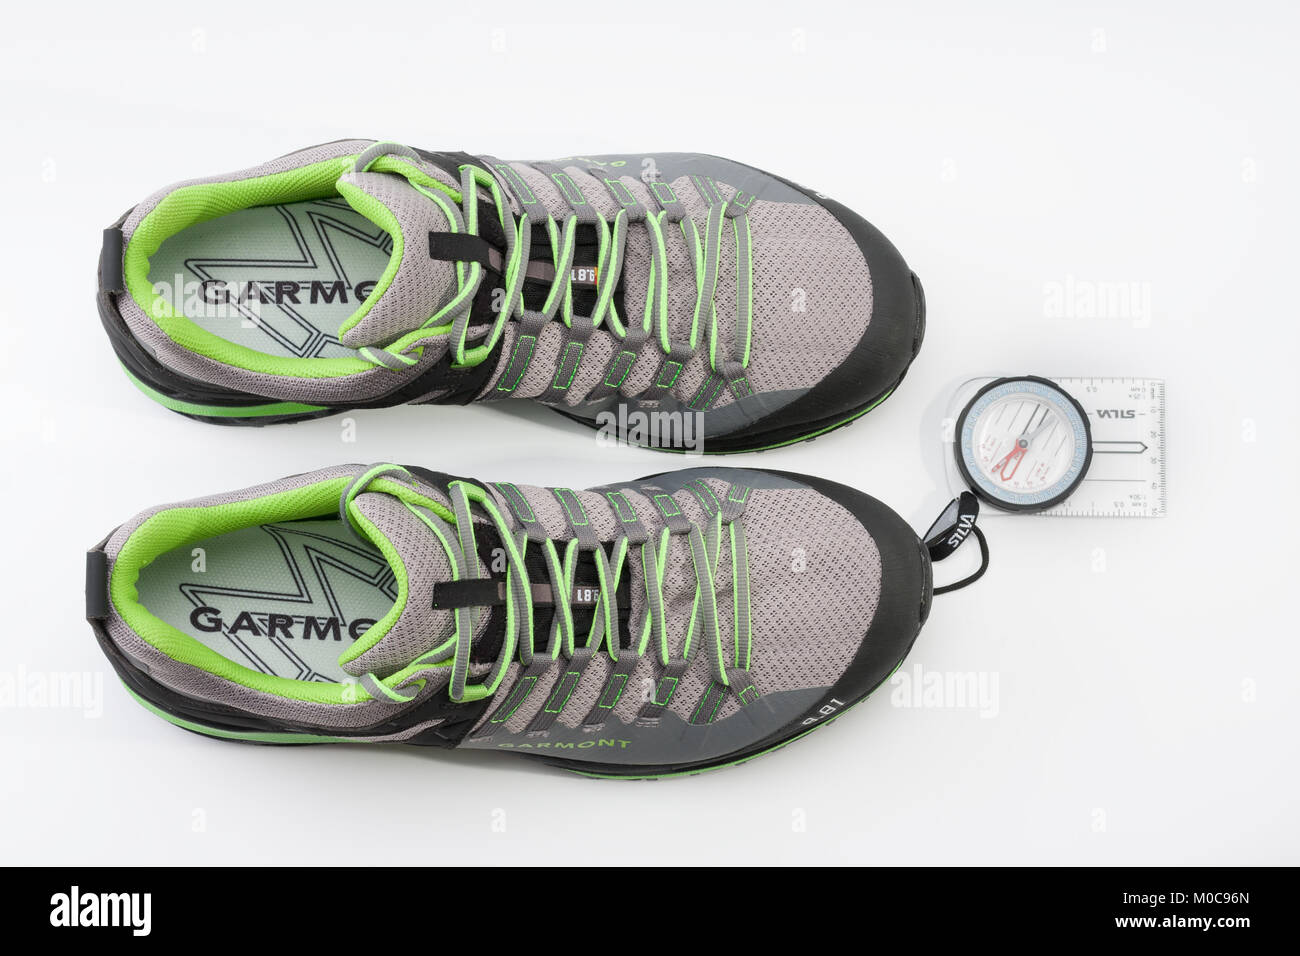 Brnenec, Tschechische Republic-July 9,2017: Damen Schuhe Garmont 9,81 speed  II für Trail Running, schnell klettern, wandern und magnetischen Kompass  auf weißem backgro Stockfotografie - Alamy